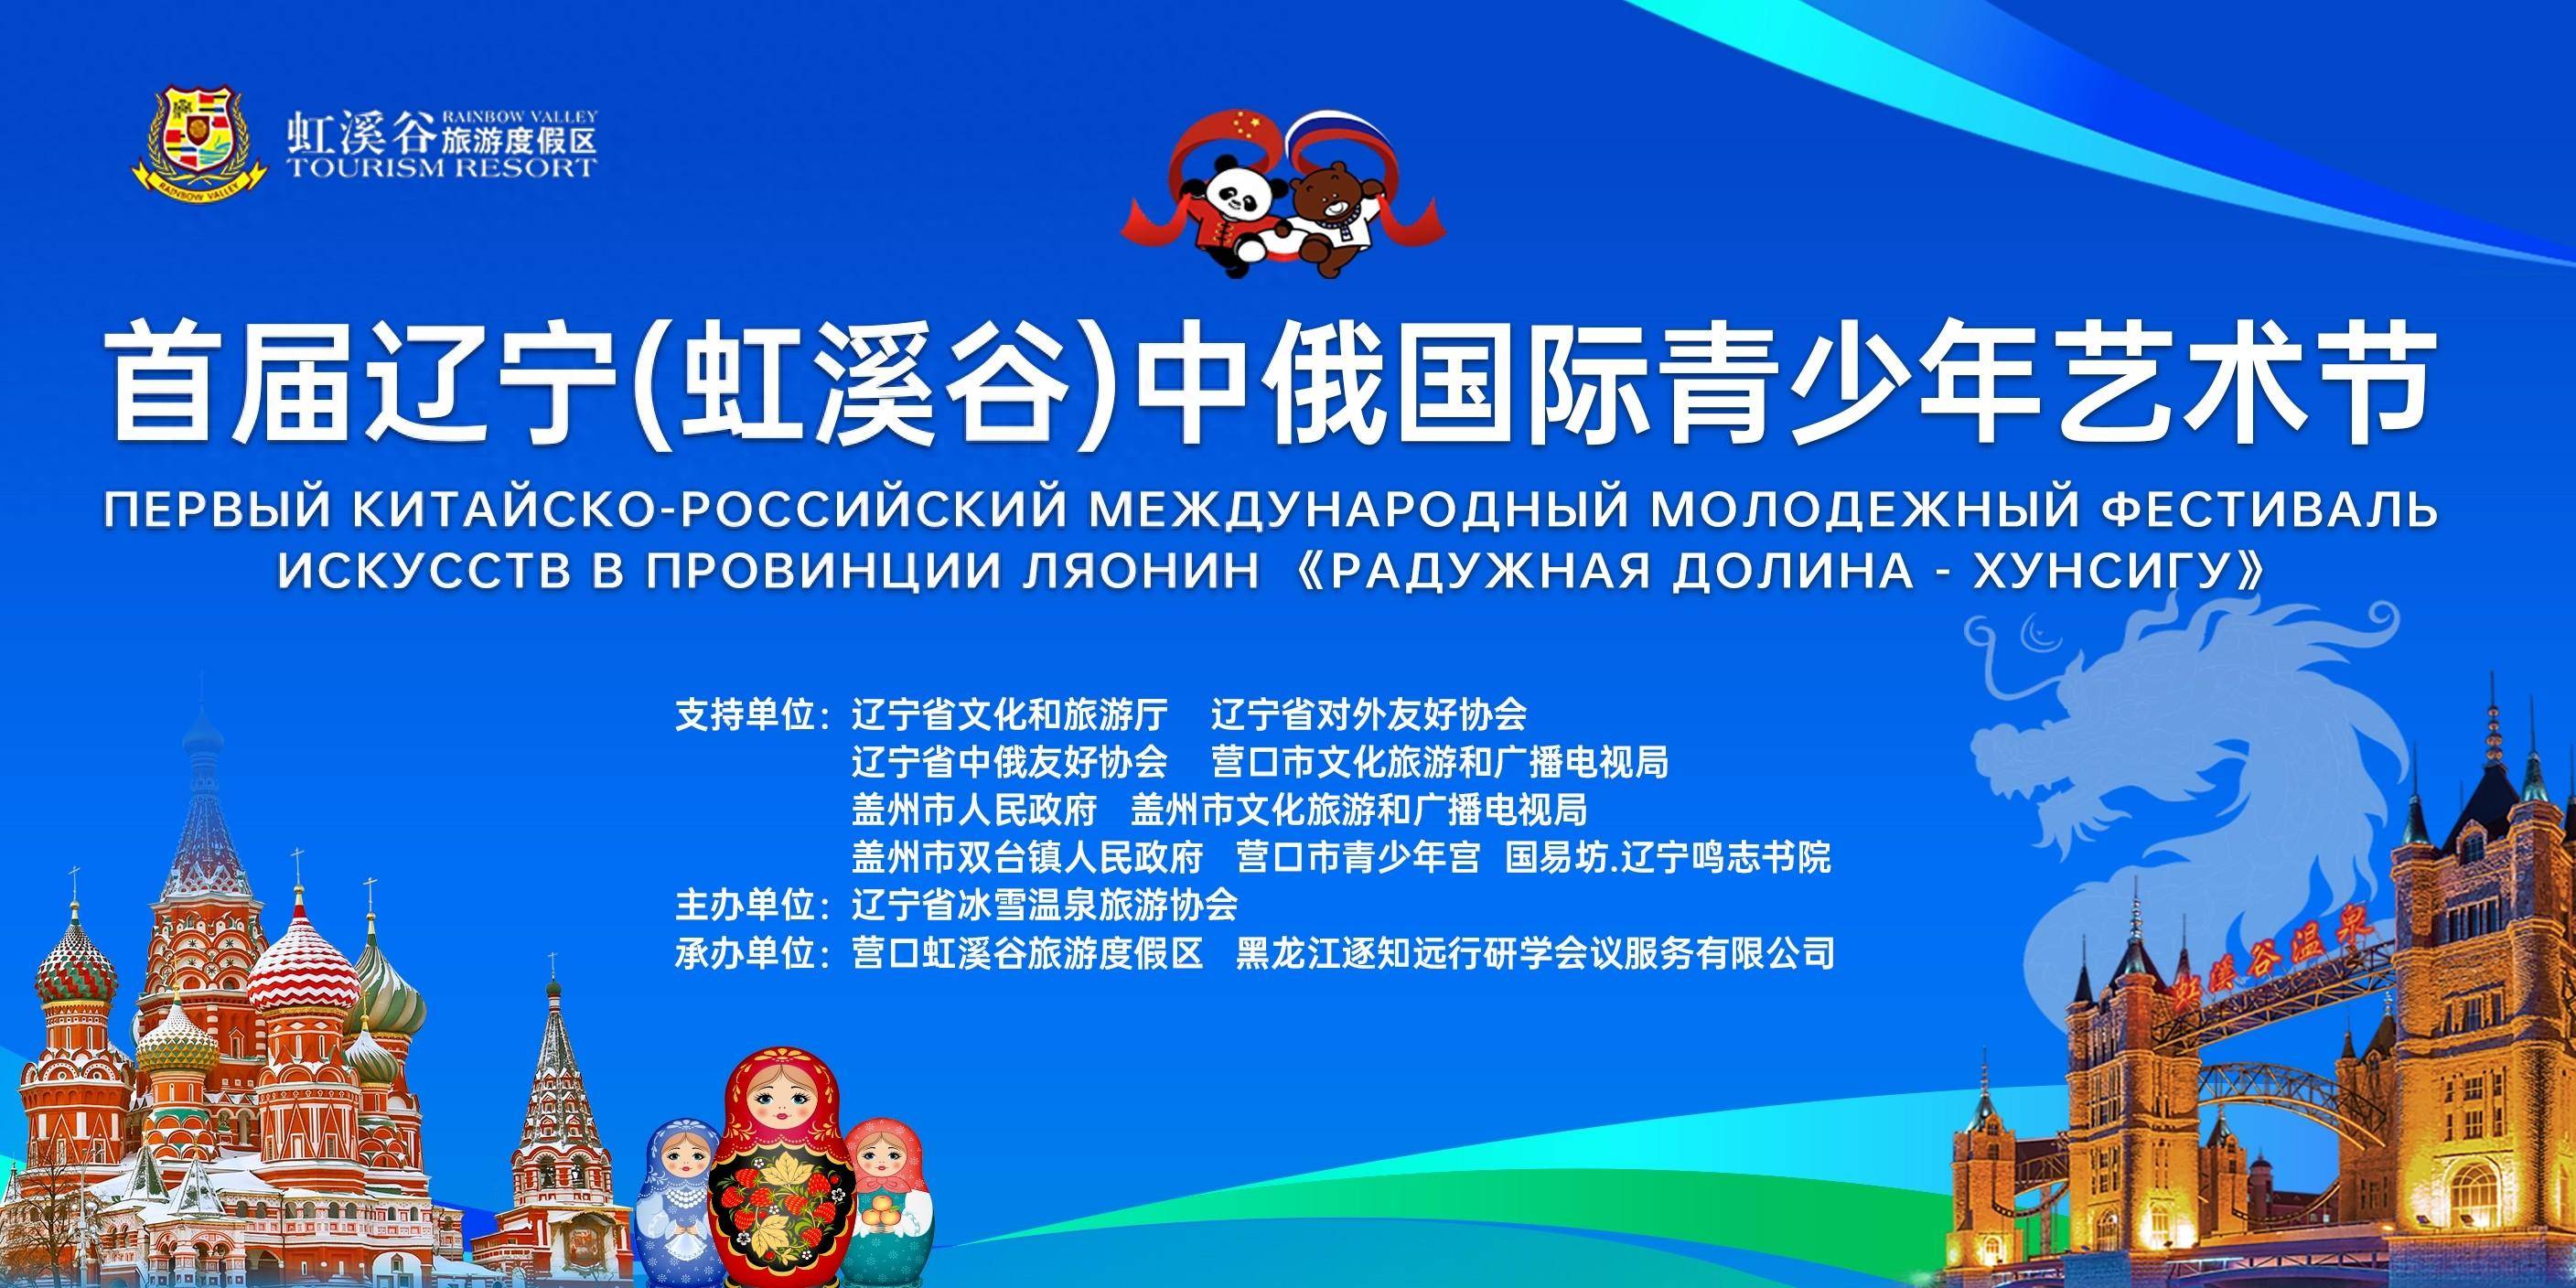 首届辽宁(虹溪谷)中俄国际青少年艺术节在营举行